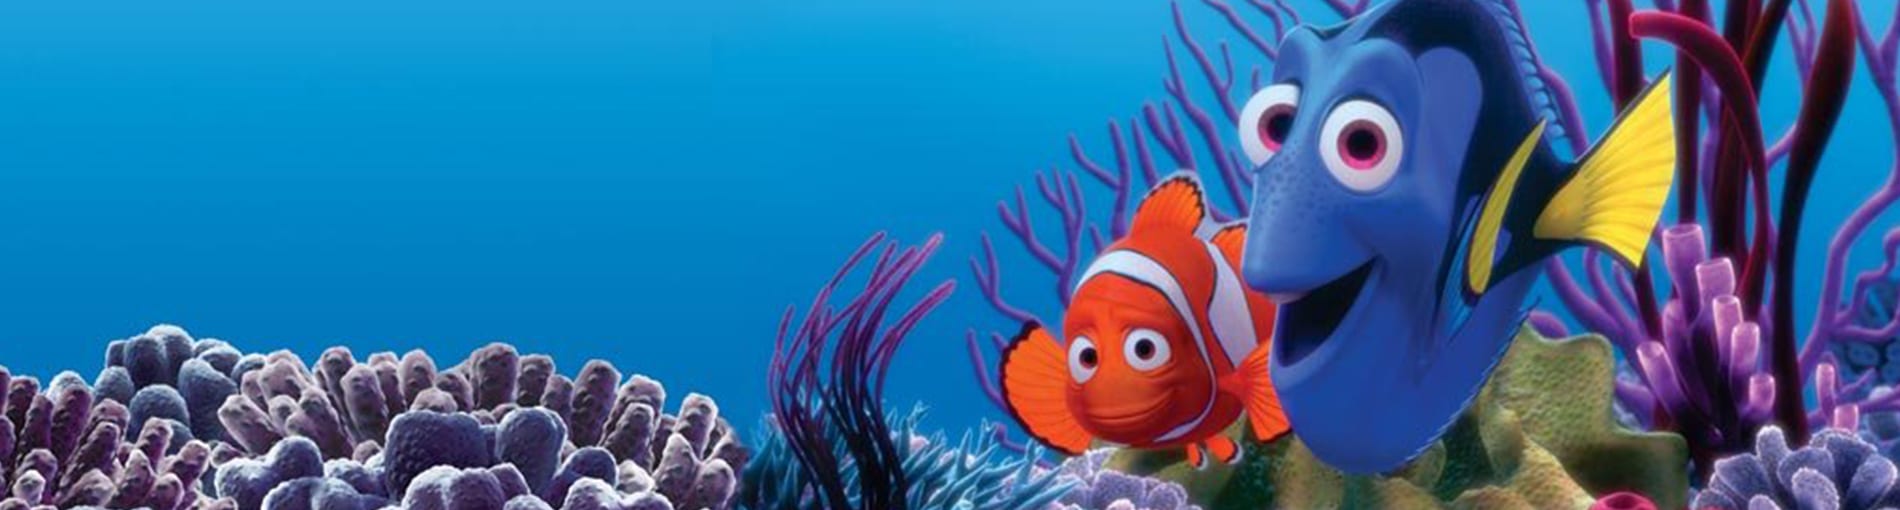 Buscando a Nemo – Crítica de cine